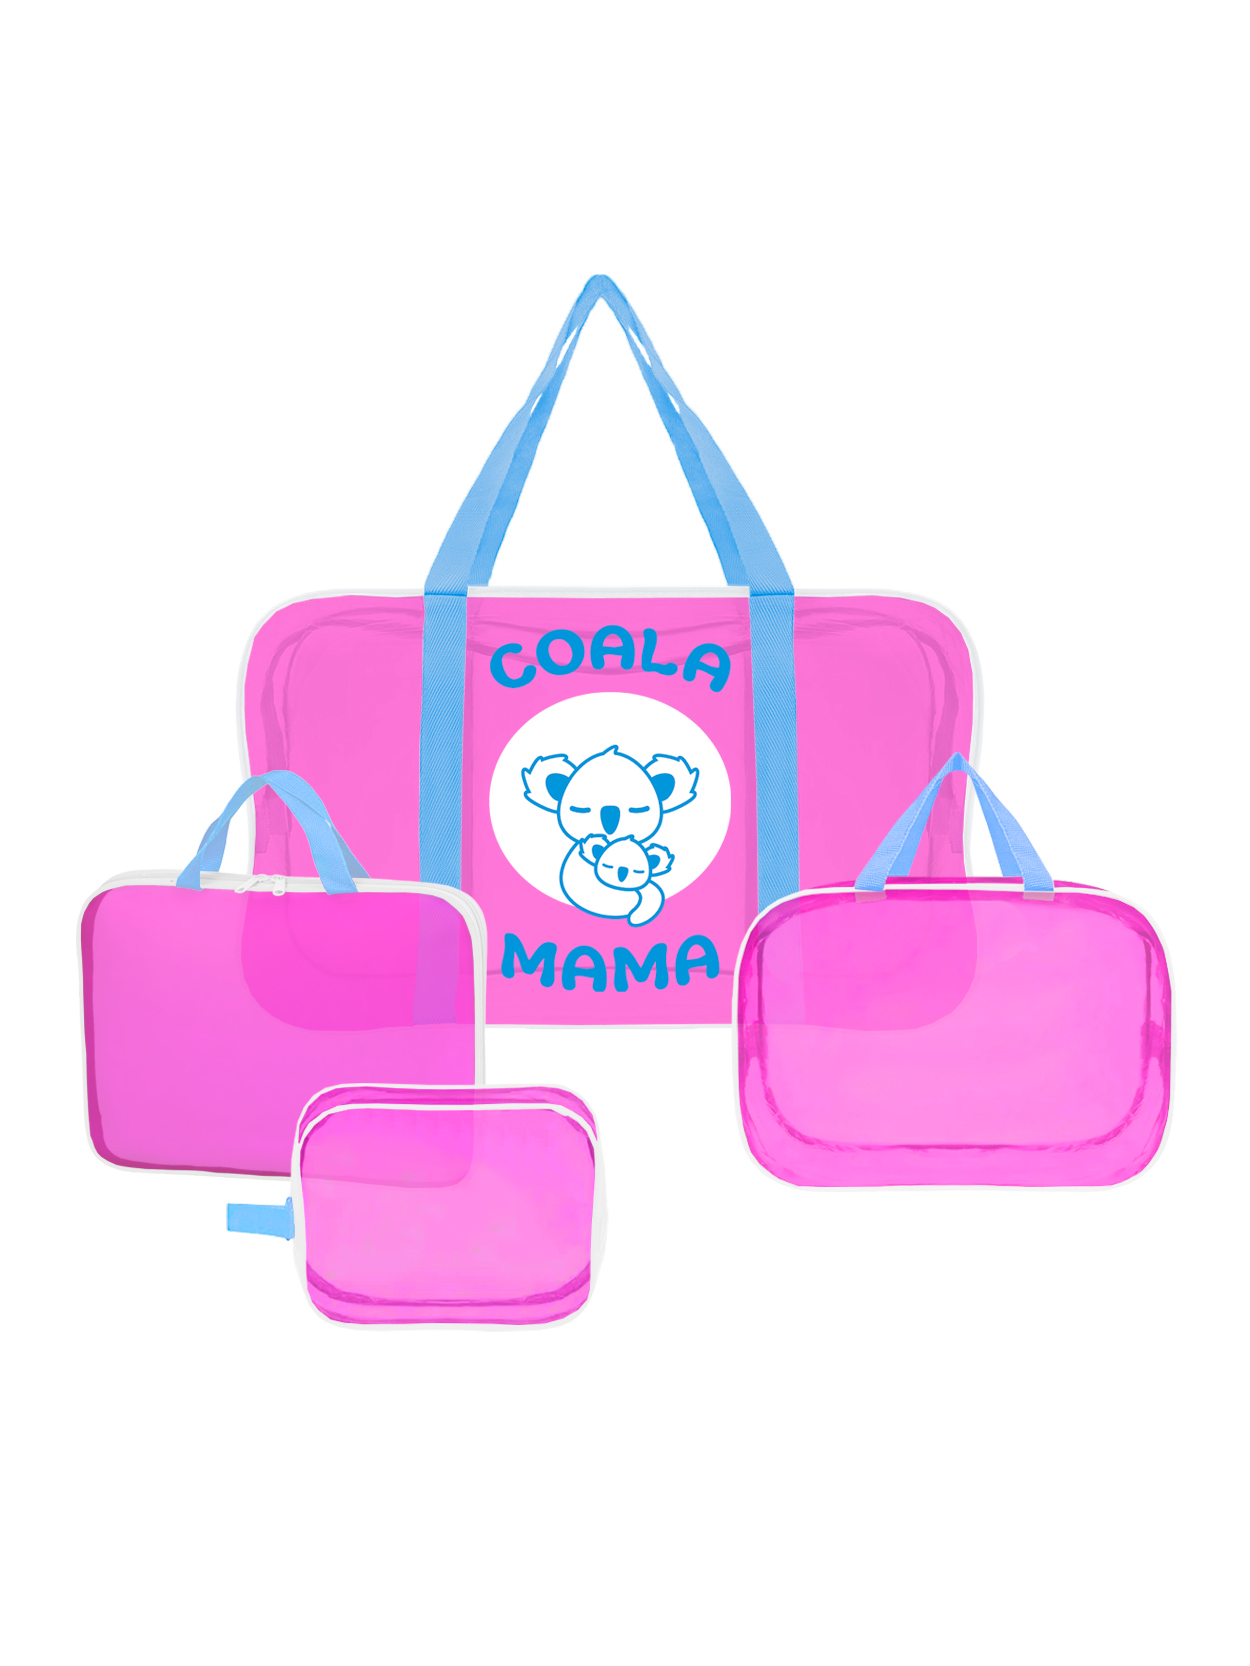 Набор сумок в роддом Coala Mama, Bubble Gum, 4 шт.